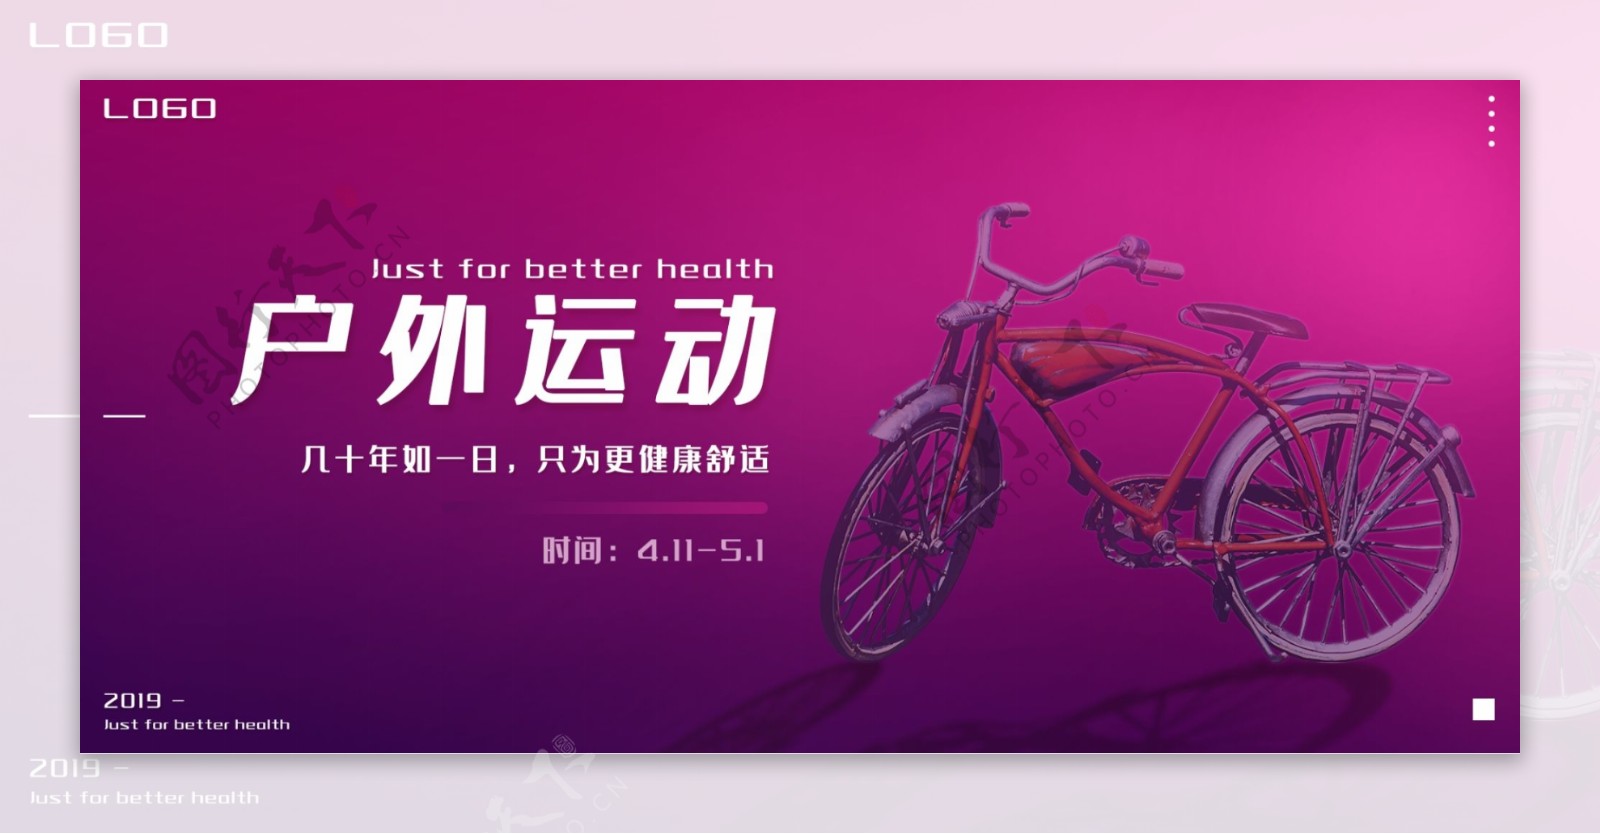 自行车banner